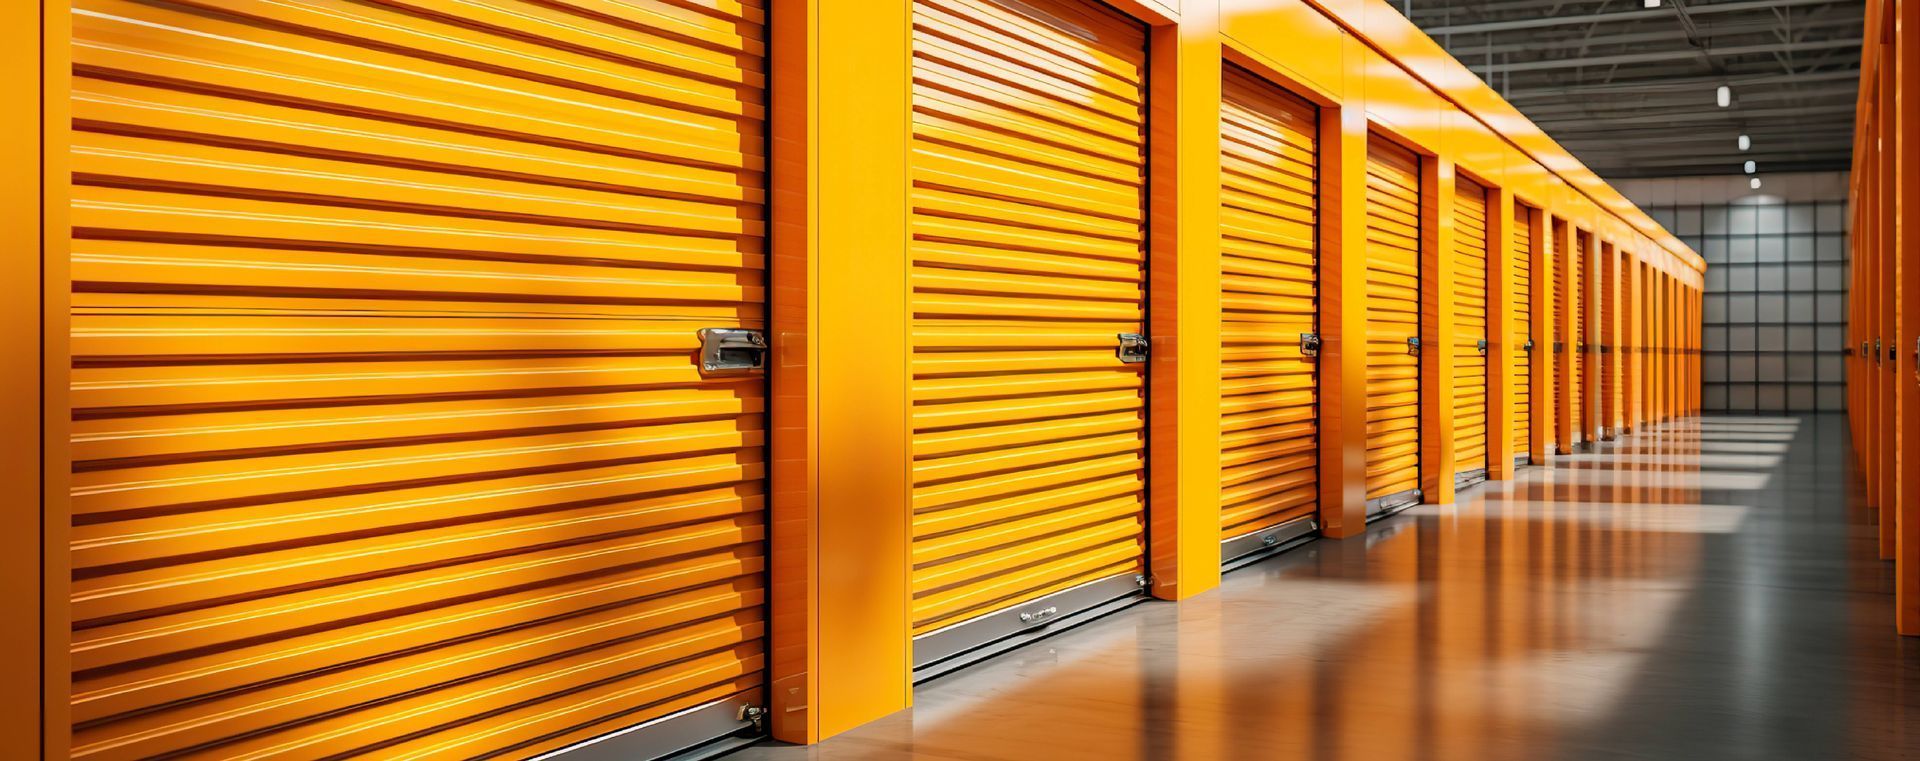 Understanding Commercial Garage Door Safety and Compliance